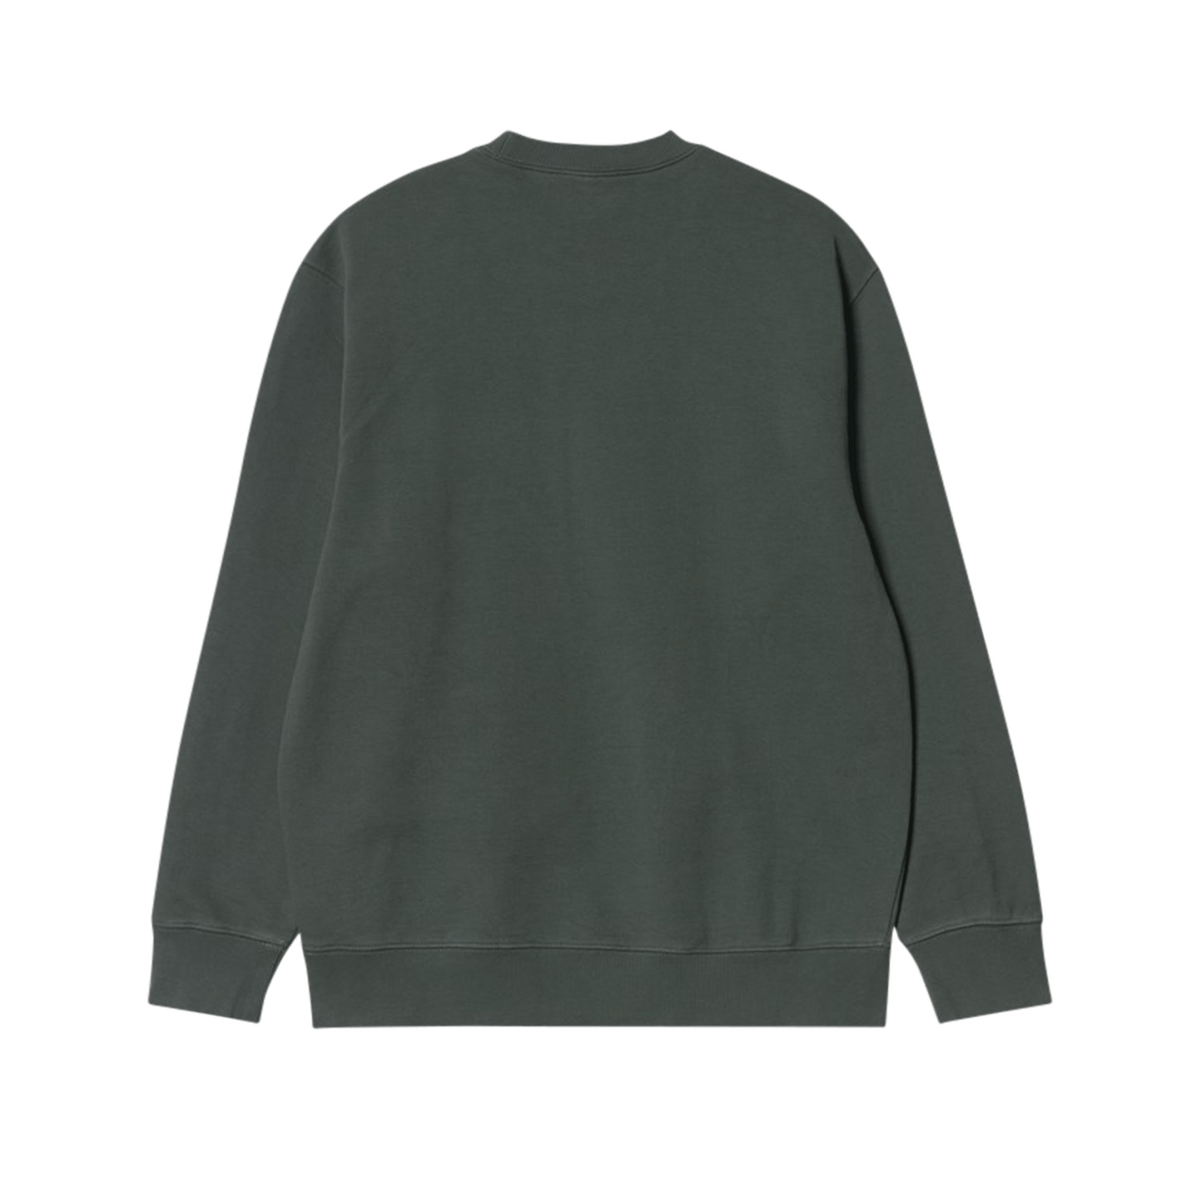 Pocket Sweatshirt - Hemlock Green